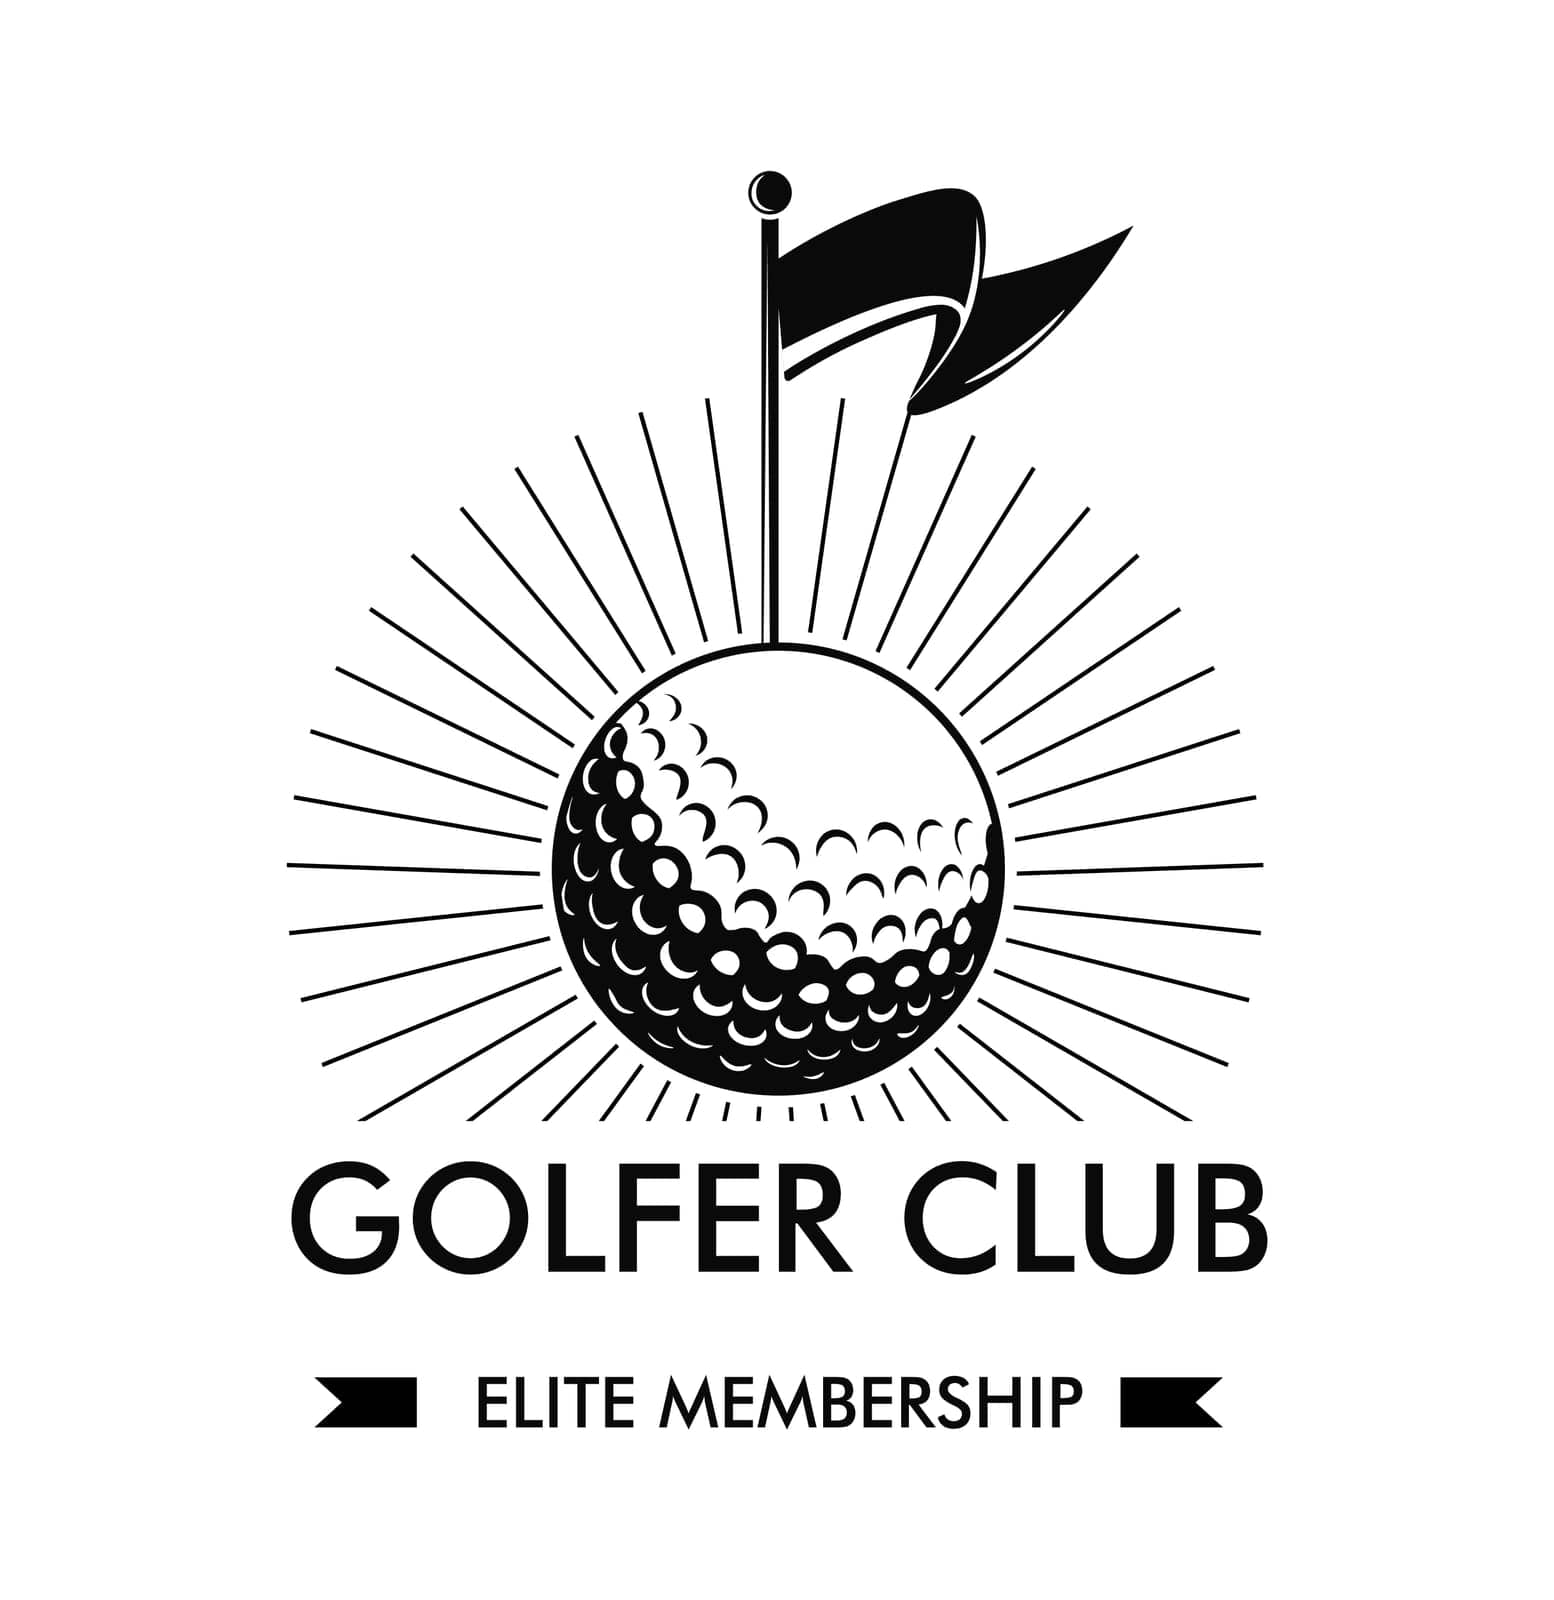 Golfer club, elite membership logotype vector by Sonulkaster